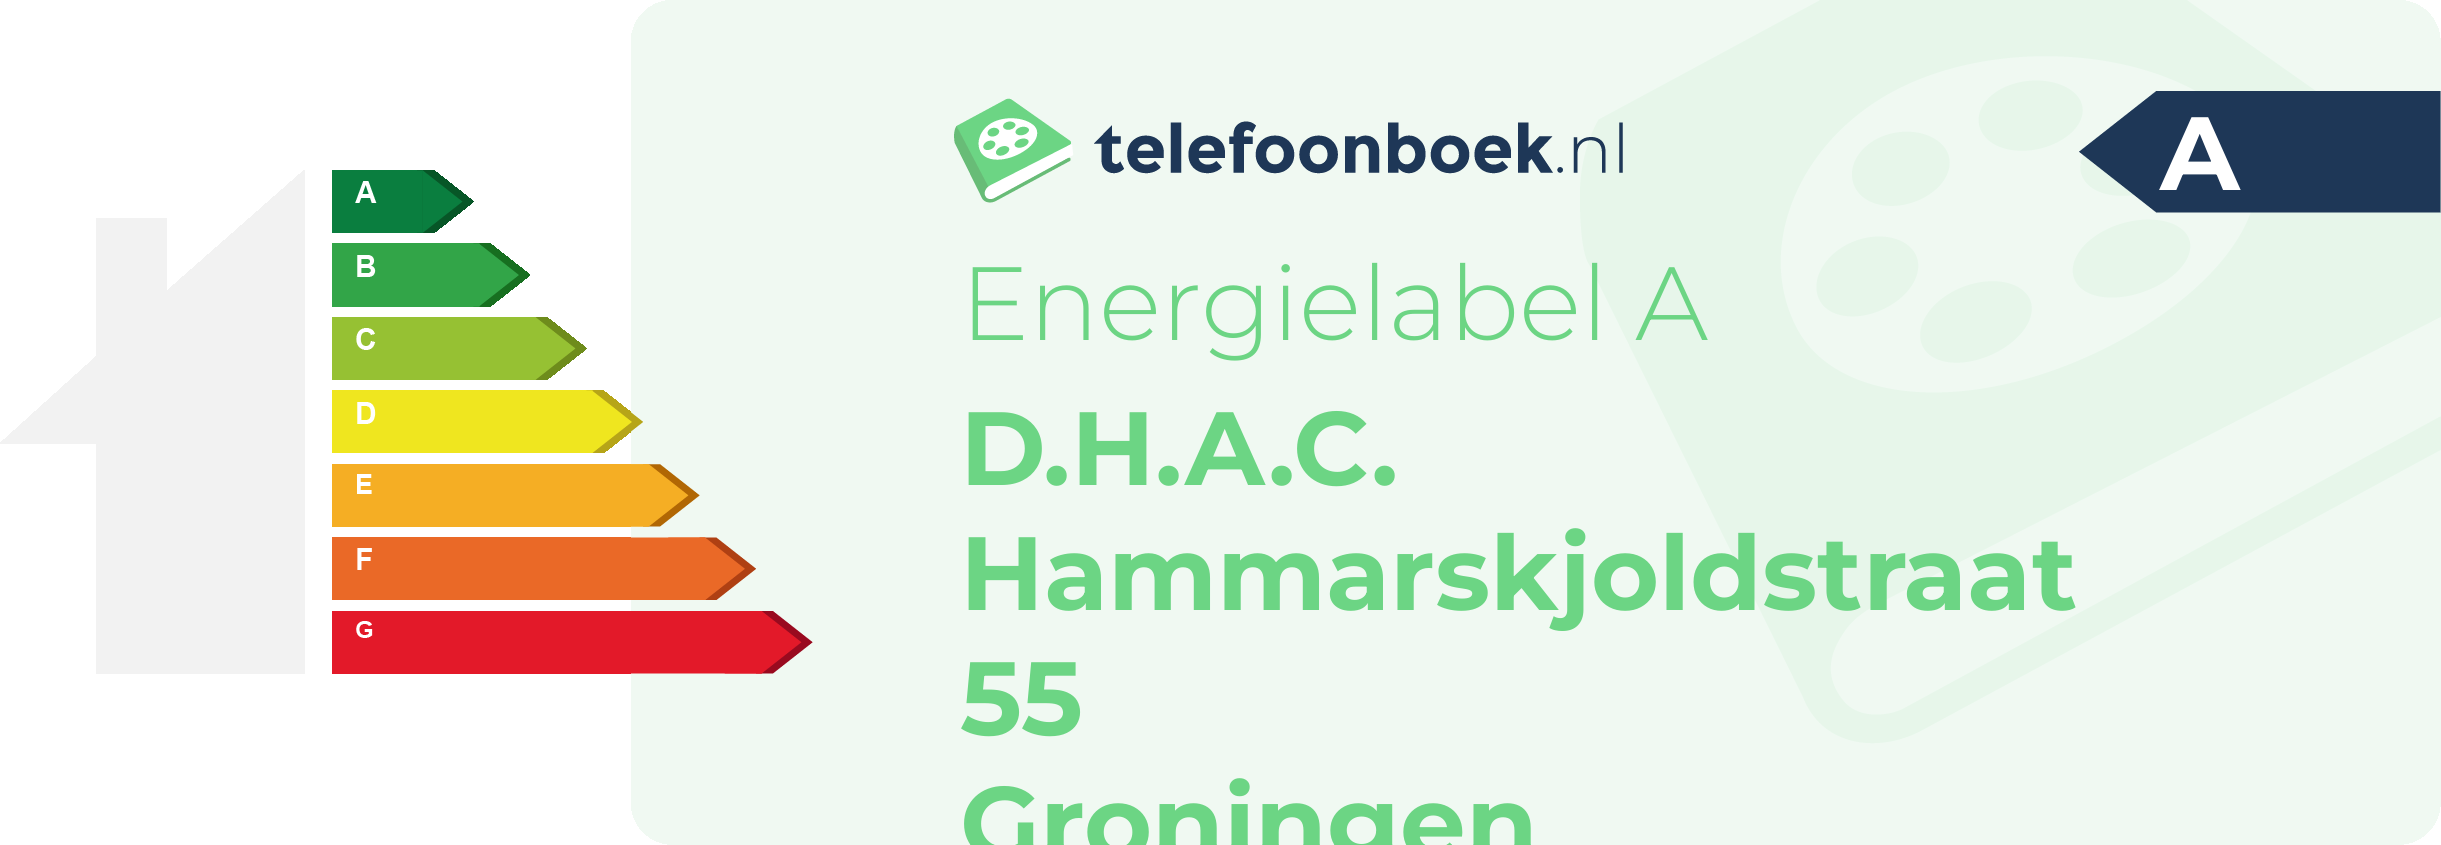 Energielabel D.H.A.C. Hammarskjoldstraat 55 Groningen